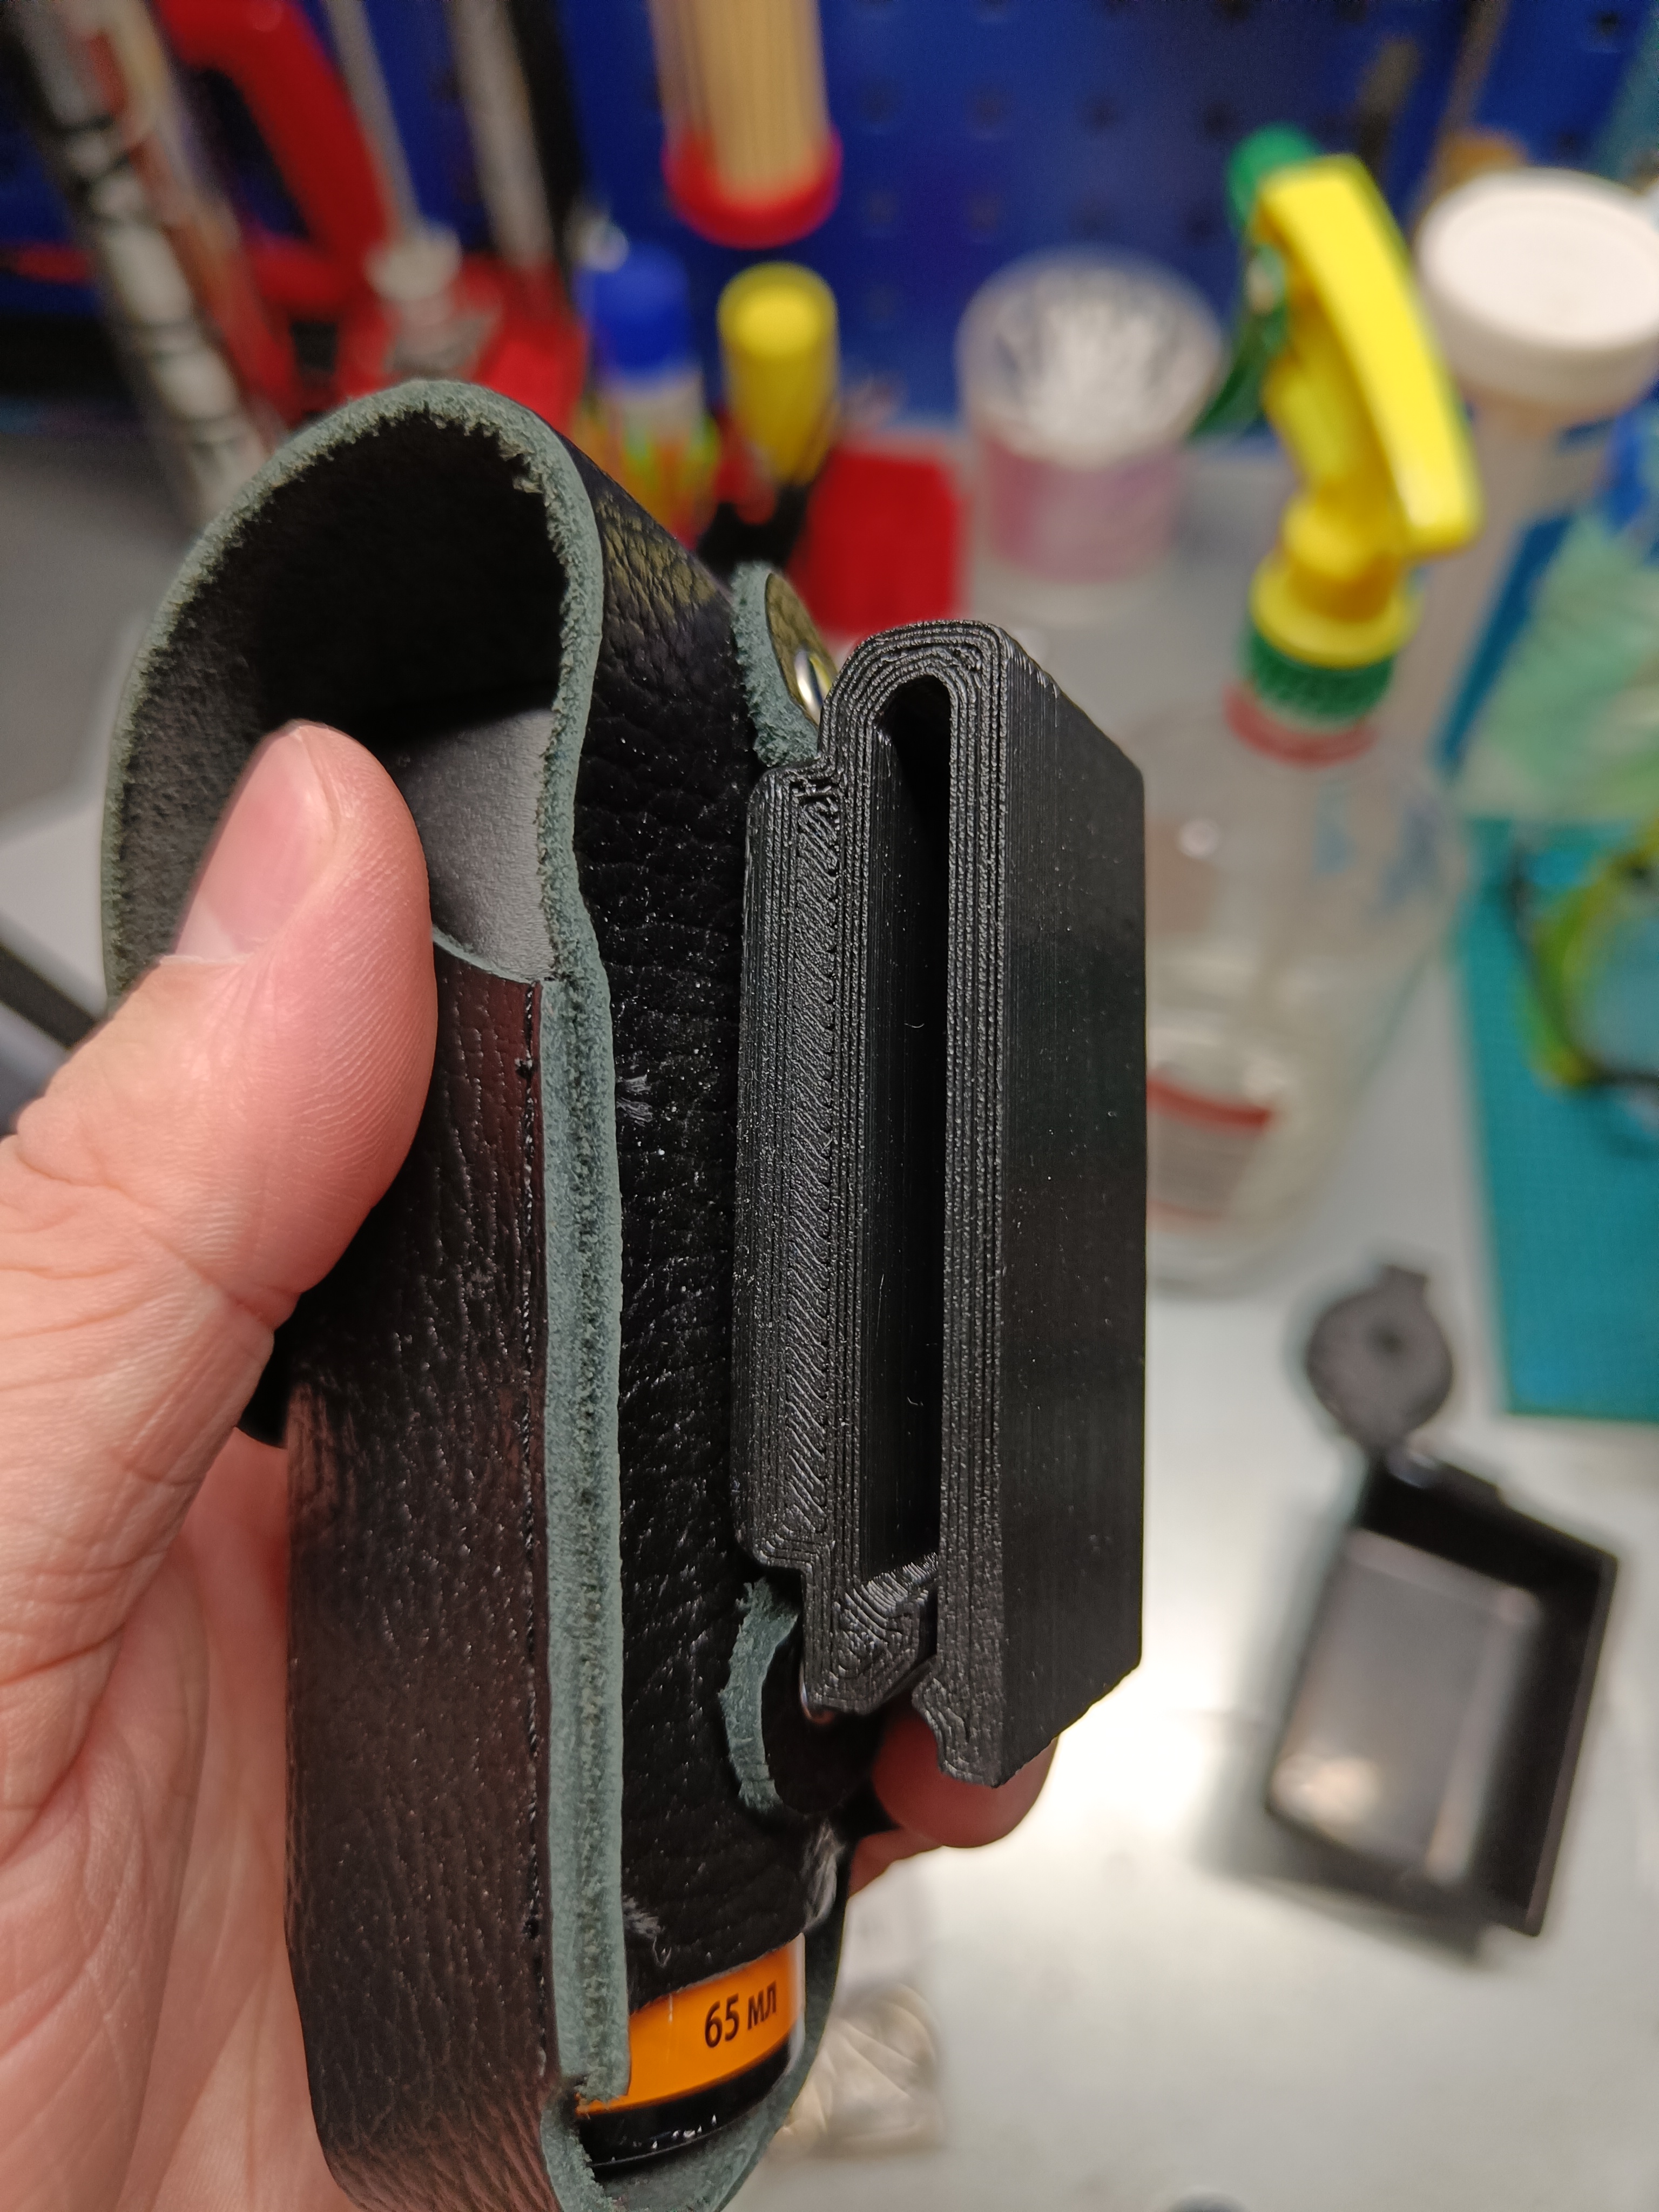 Gurt adapter / safety belt adapter für alle KIA by 3Ddruckerling -  Thingiverse